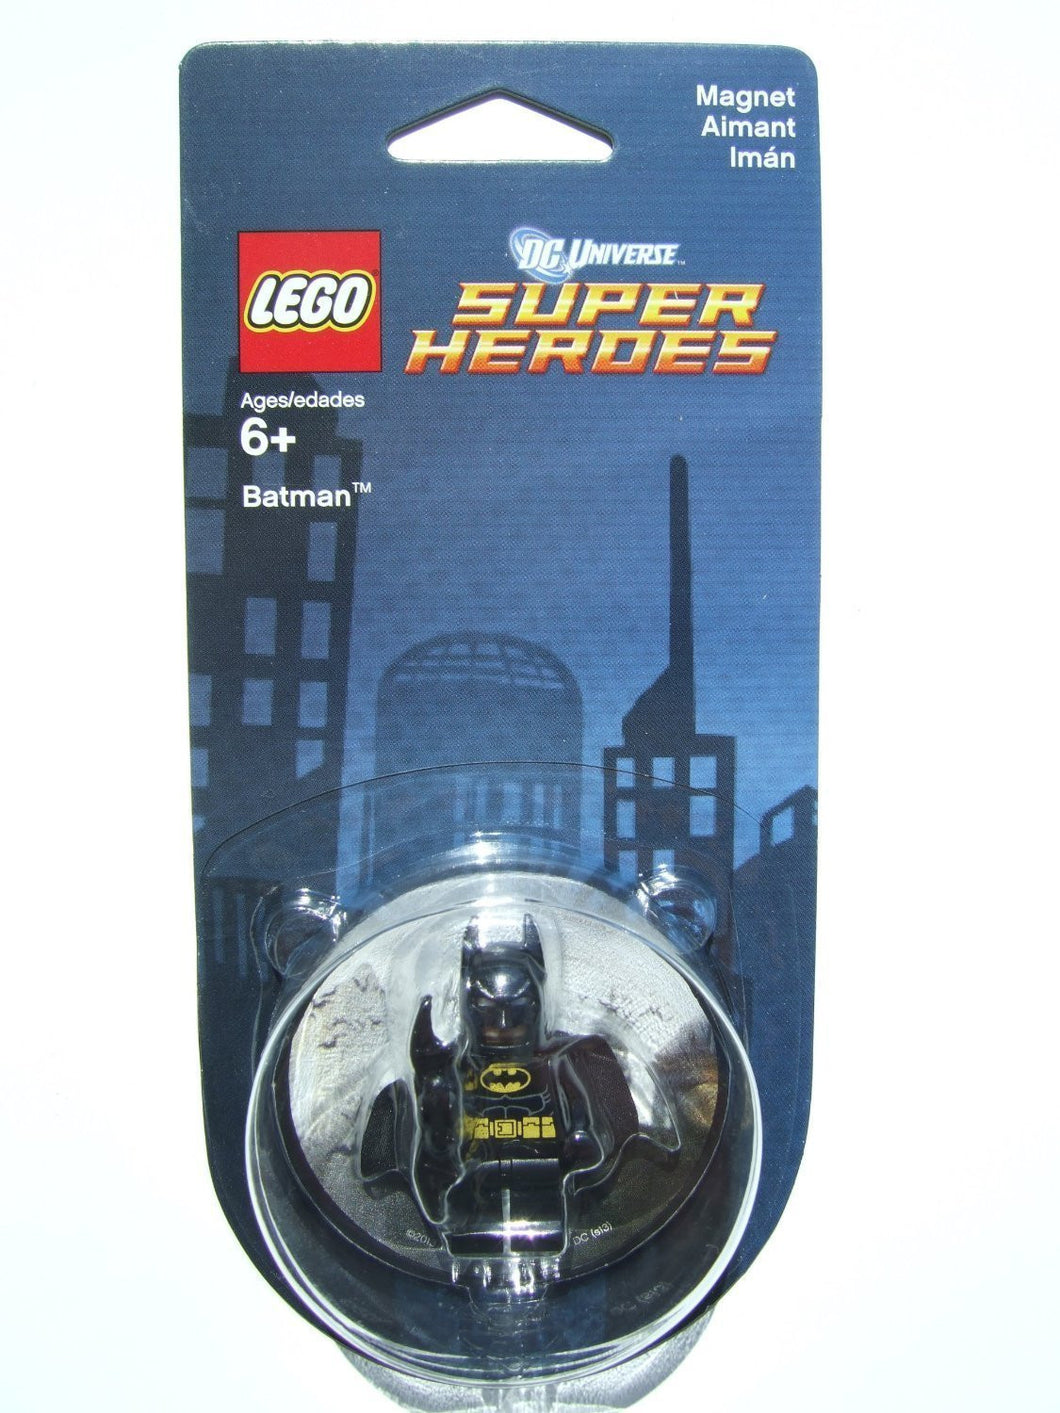 LEGO DC Universe Super Heroes Batman Magnet